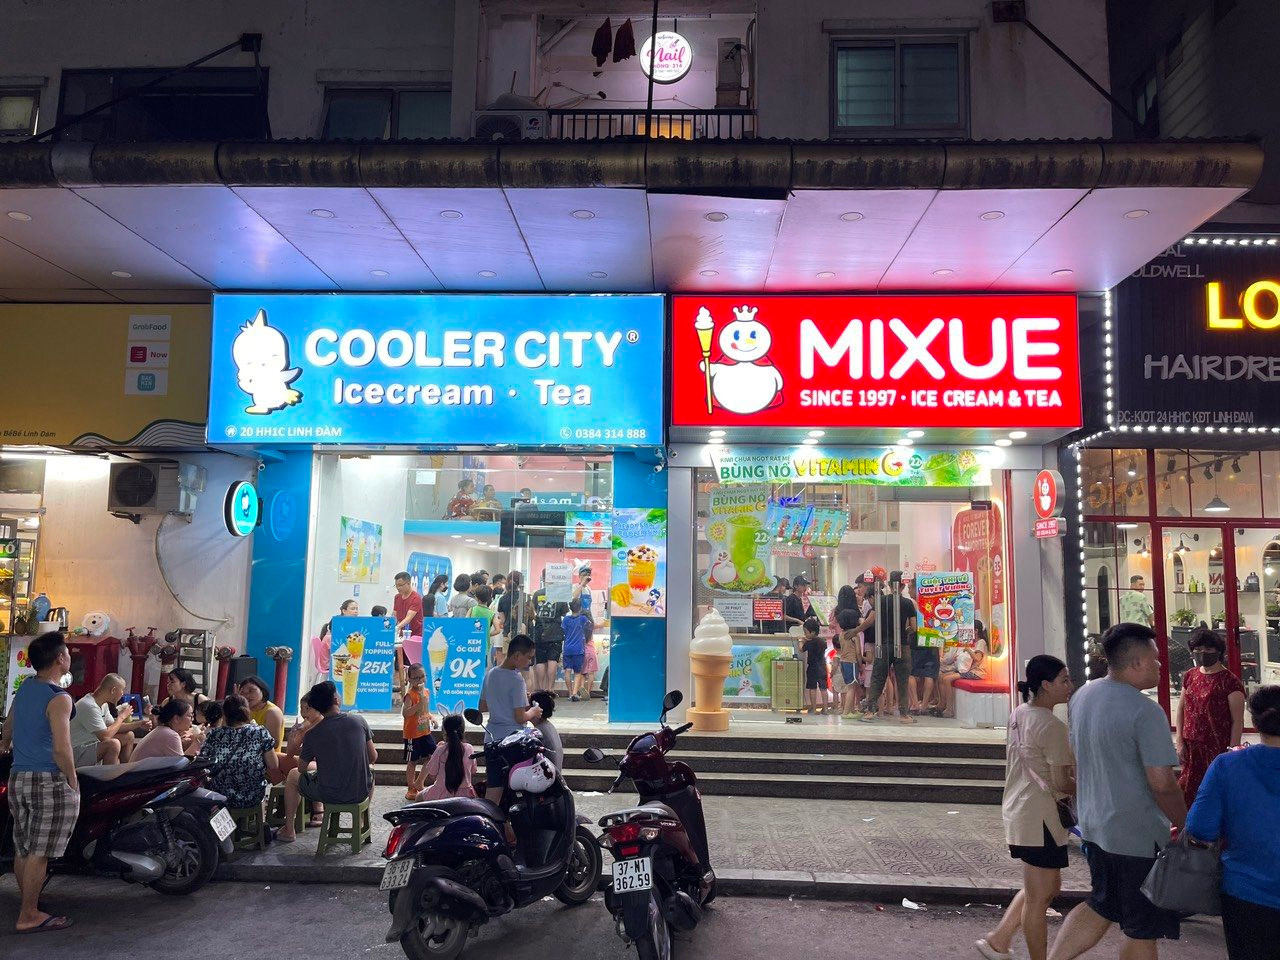 Đại gia nào đứng sau Cooler City - "kỳ phùng chiến thủ" của Mixue? 